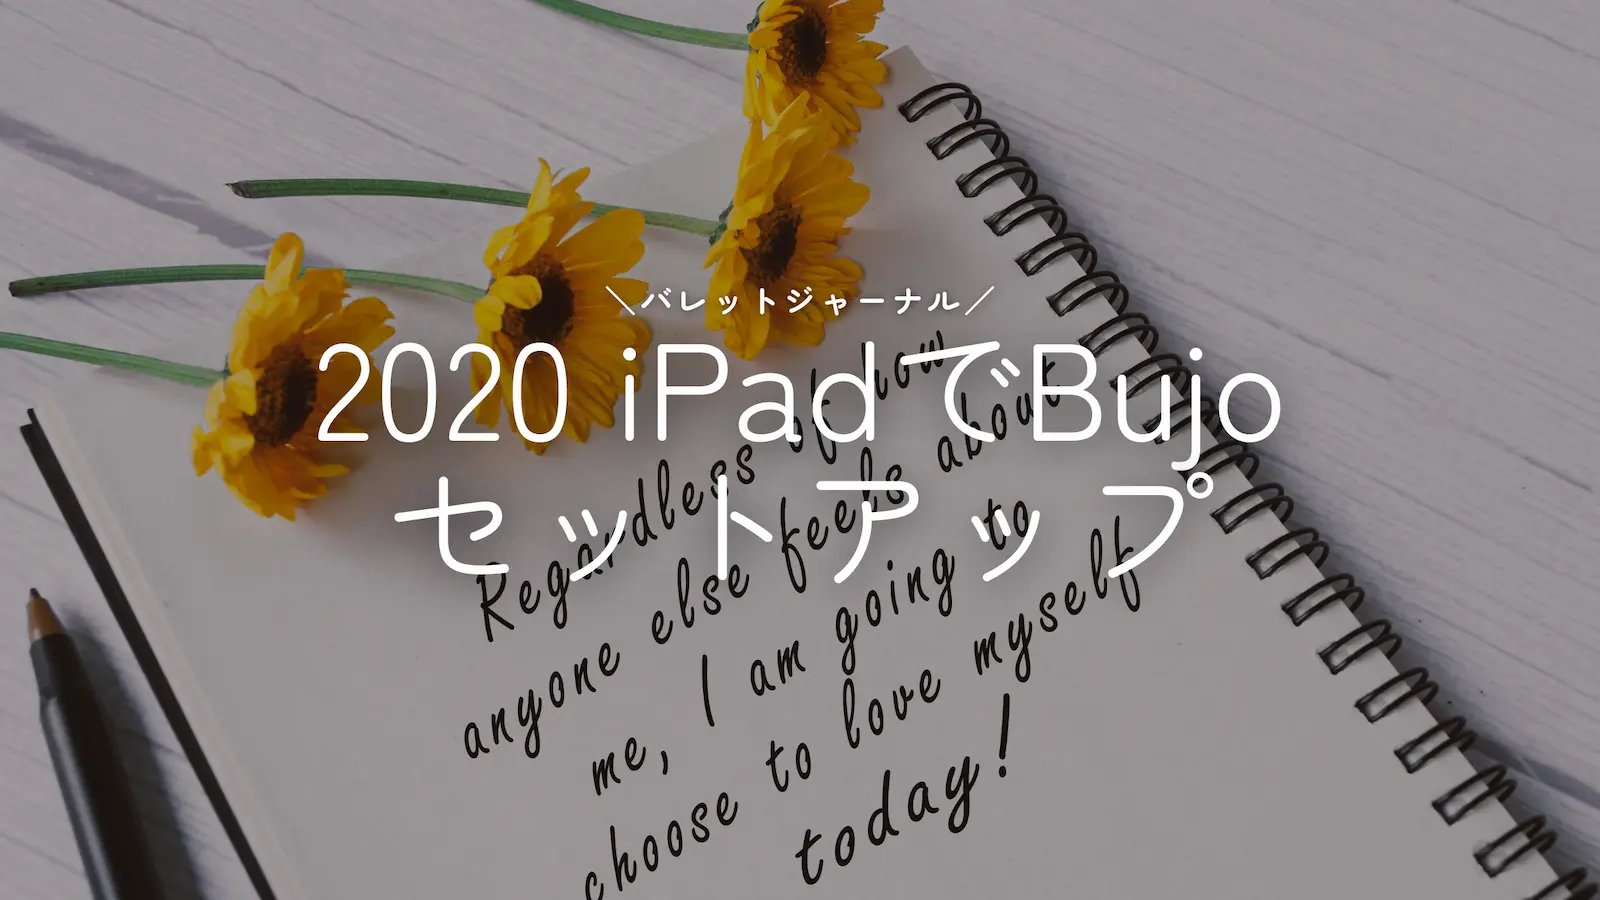 【2020】iPadでバレットジャーナル始めます【セットアップ】